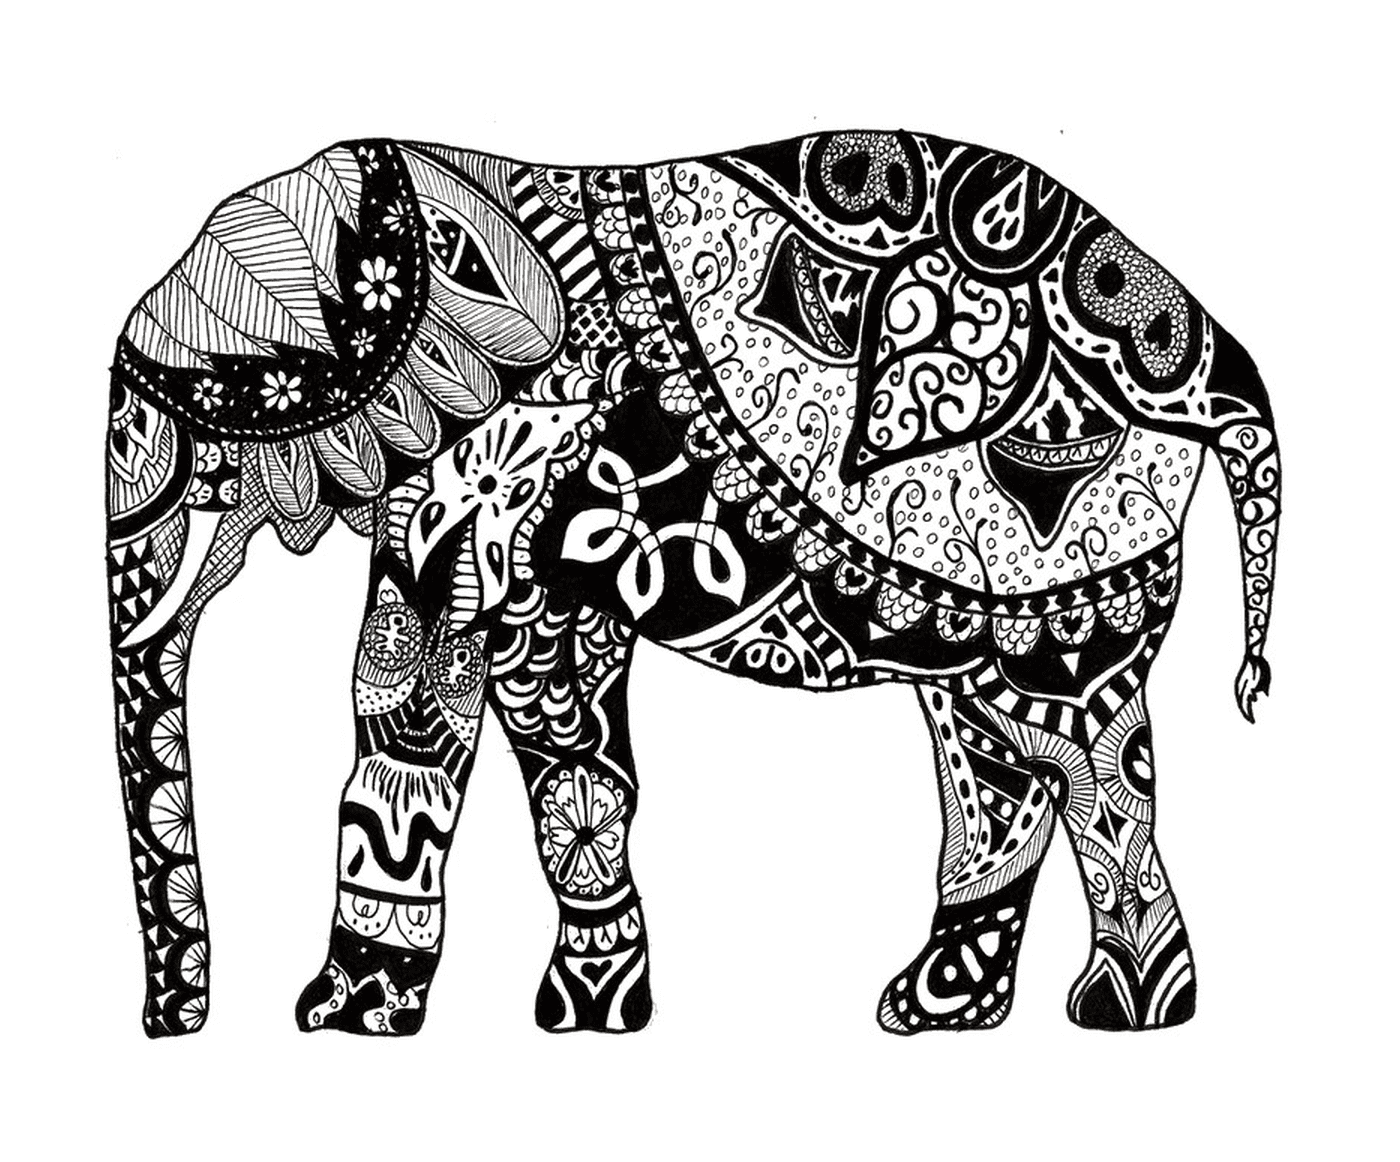  大象身上有许多曼达拉斯 